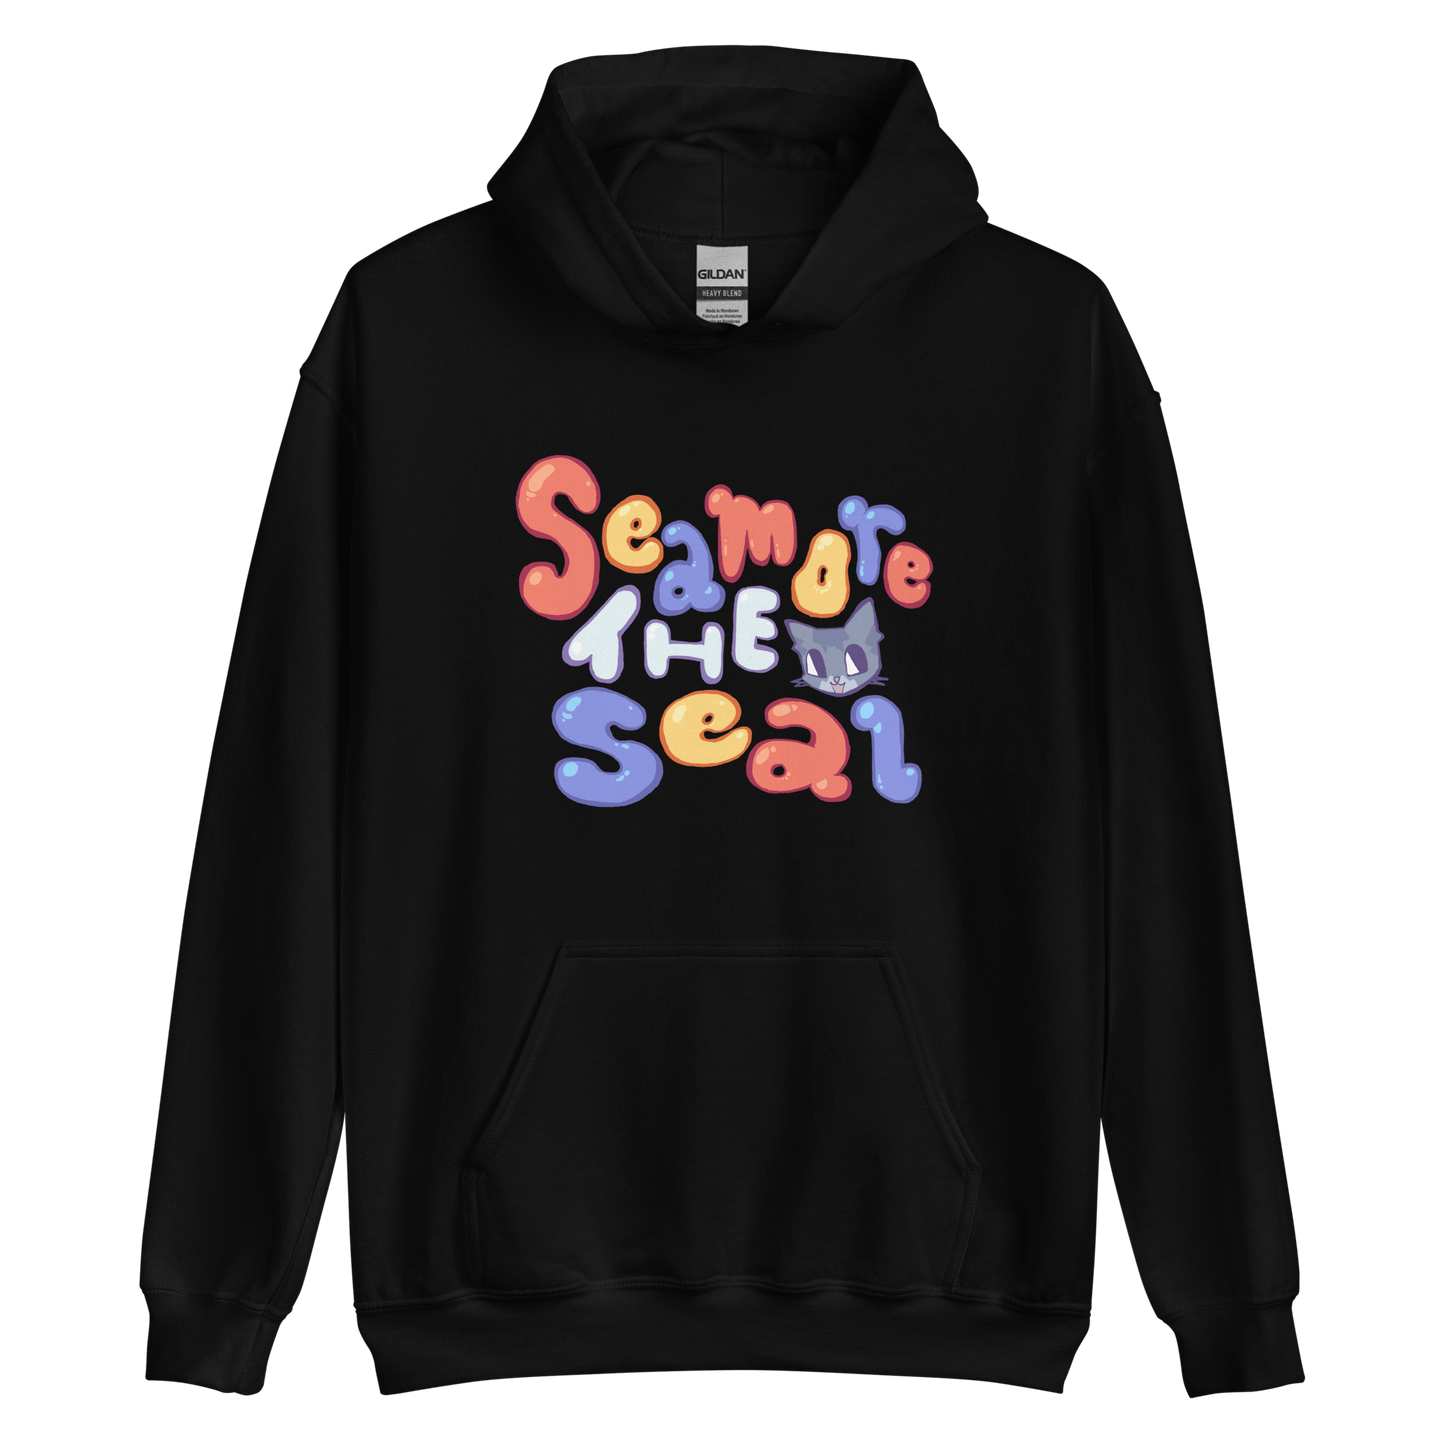 seamoretheseal hoodie